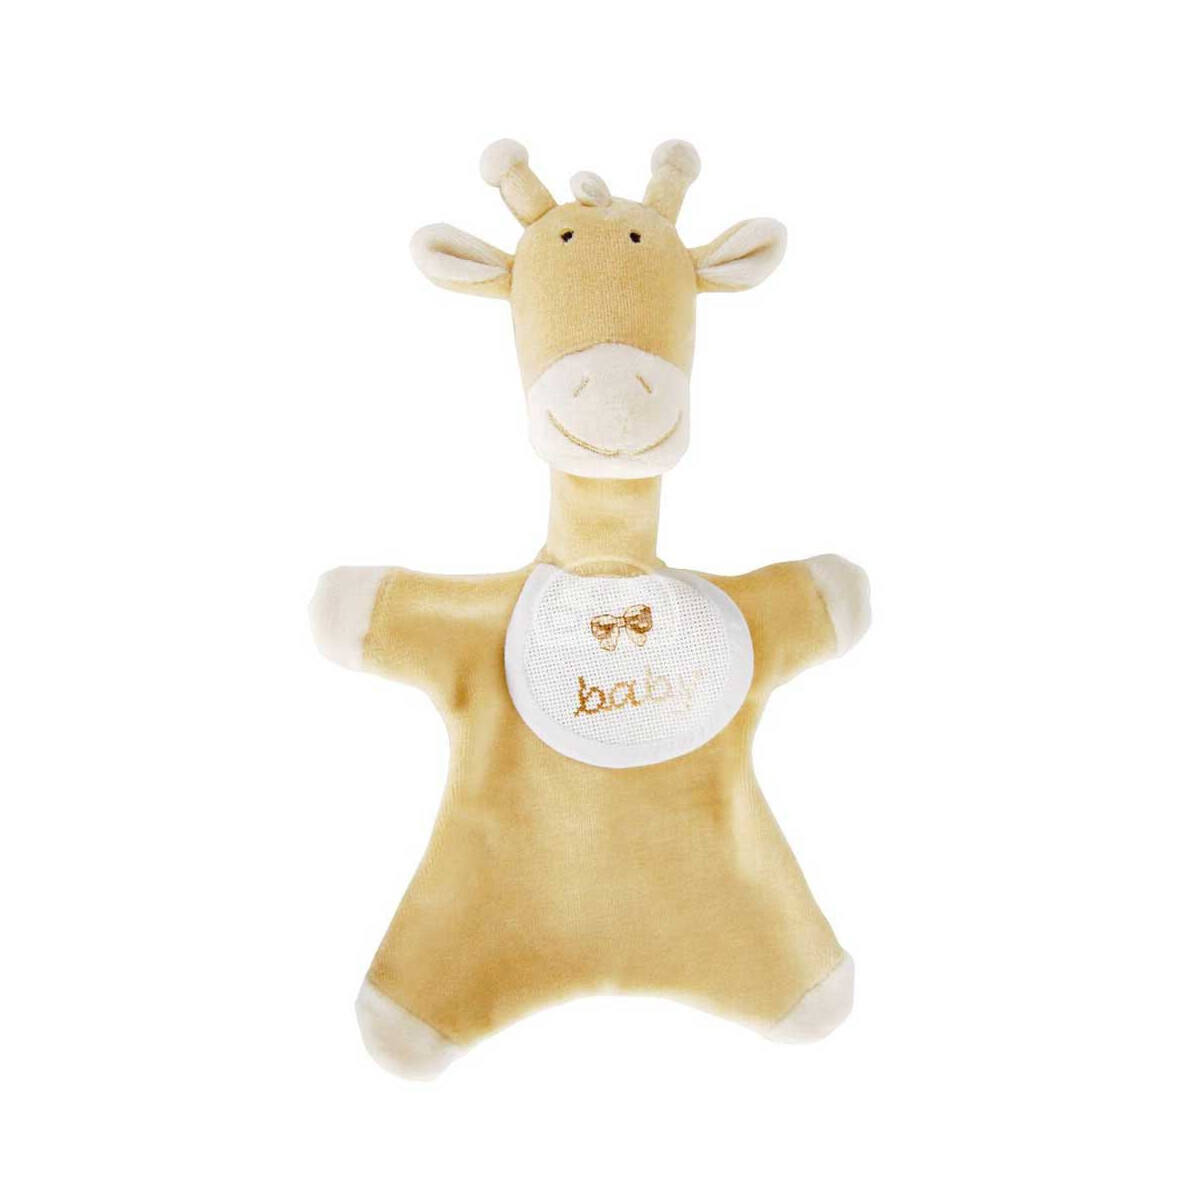 DMC игрушечный жираф для вышивания, песочного цвета